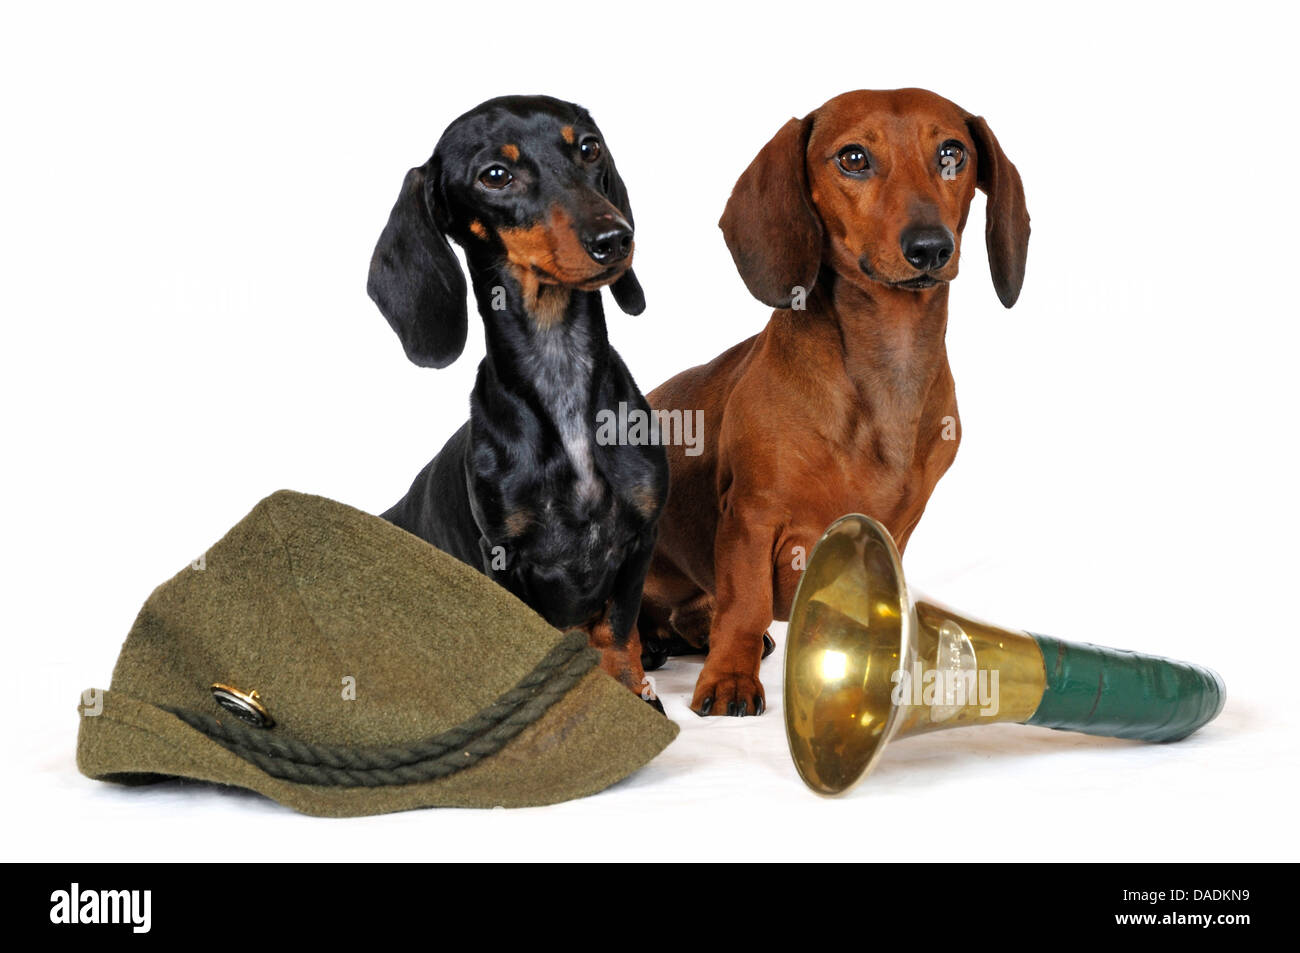 Kurzhaar-Dackel Kurzhaar-Dackel, Haushund (Canis Lupus F. Familiaris), zwei Kurzhaar-Dackel sitzen ein Jagdhorn und einen Jäger s Hut, Deutschland, Nordrhein Westfalen Stockfoto